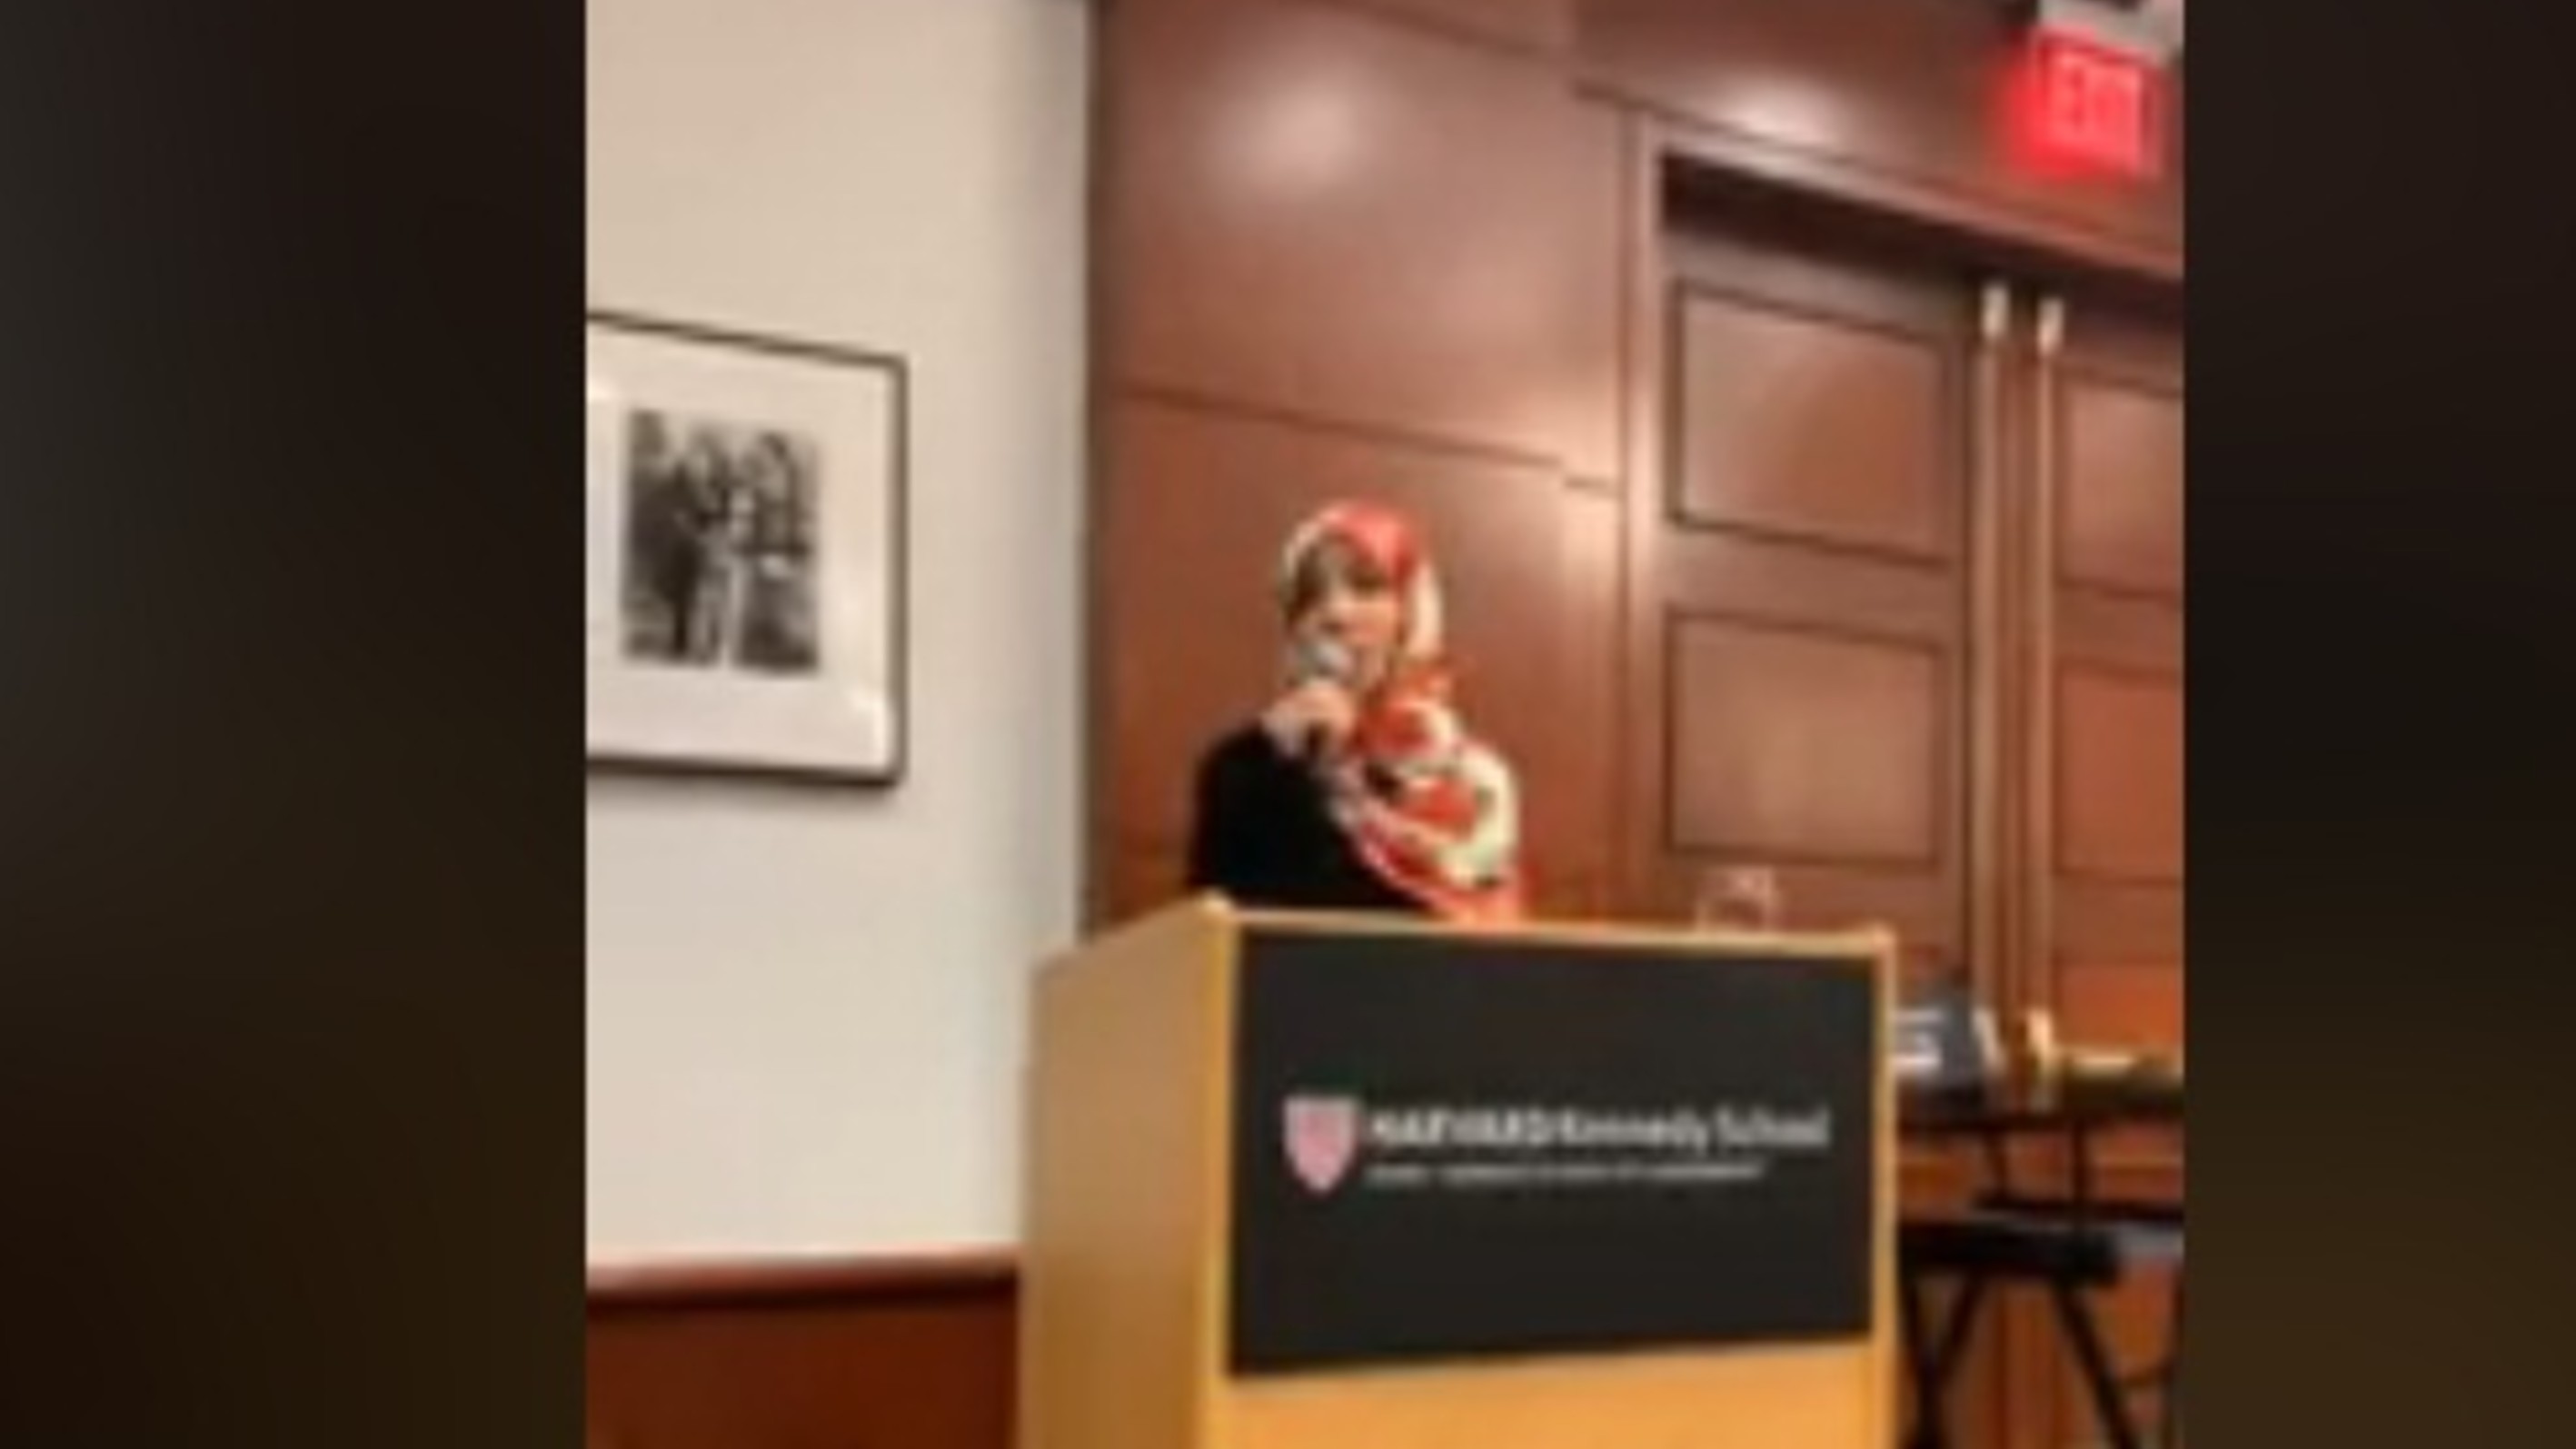 كلمة الناشطة الحائزة على جائزة نوبل للسلام توكل كرمان بعنوان كفاح الشعوب العربية المستمر في سبيل الحرية - جامعة هارفارد